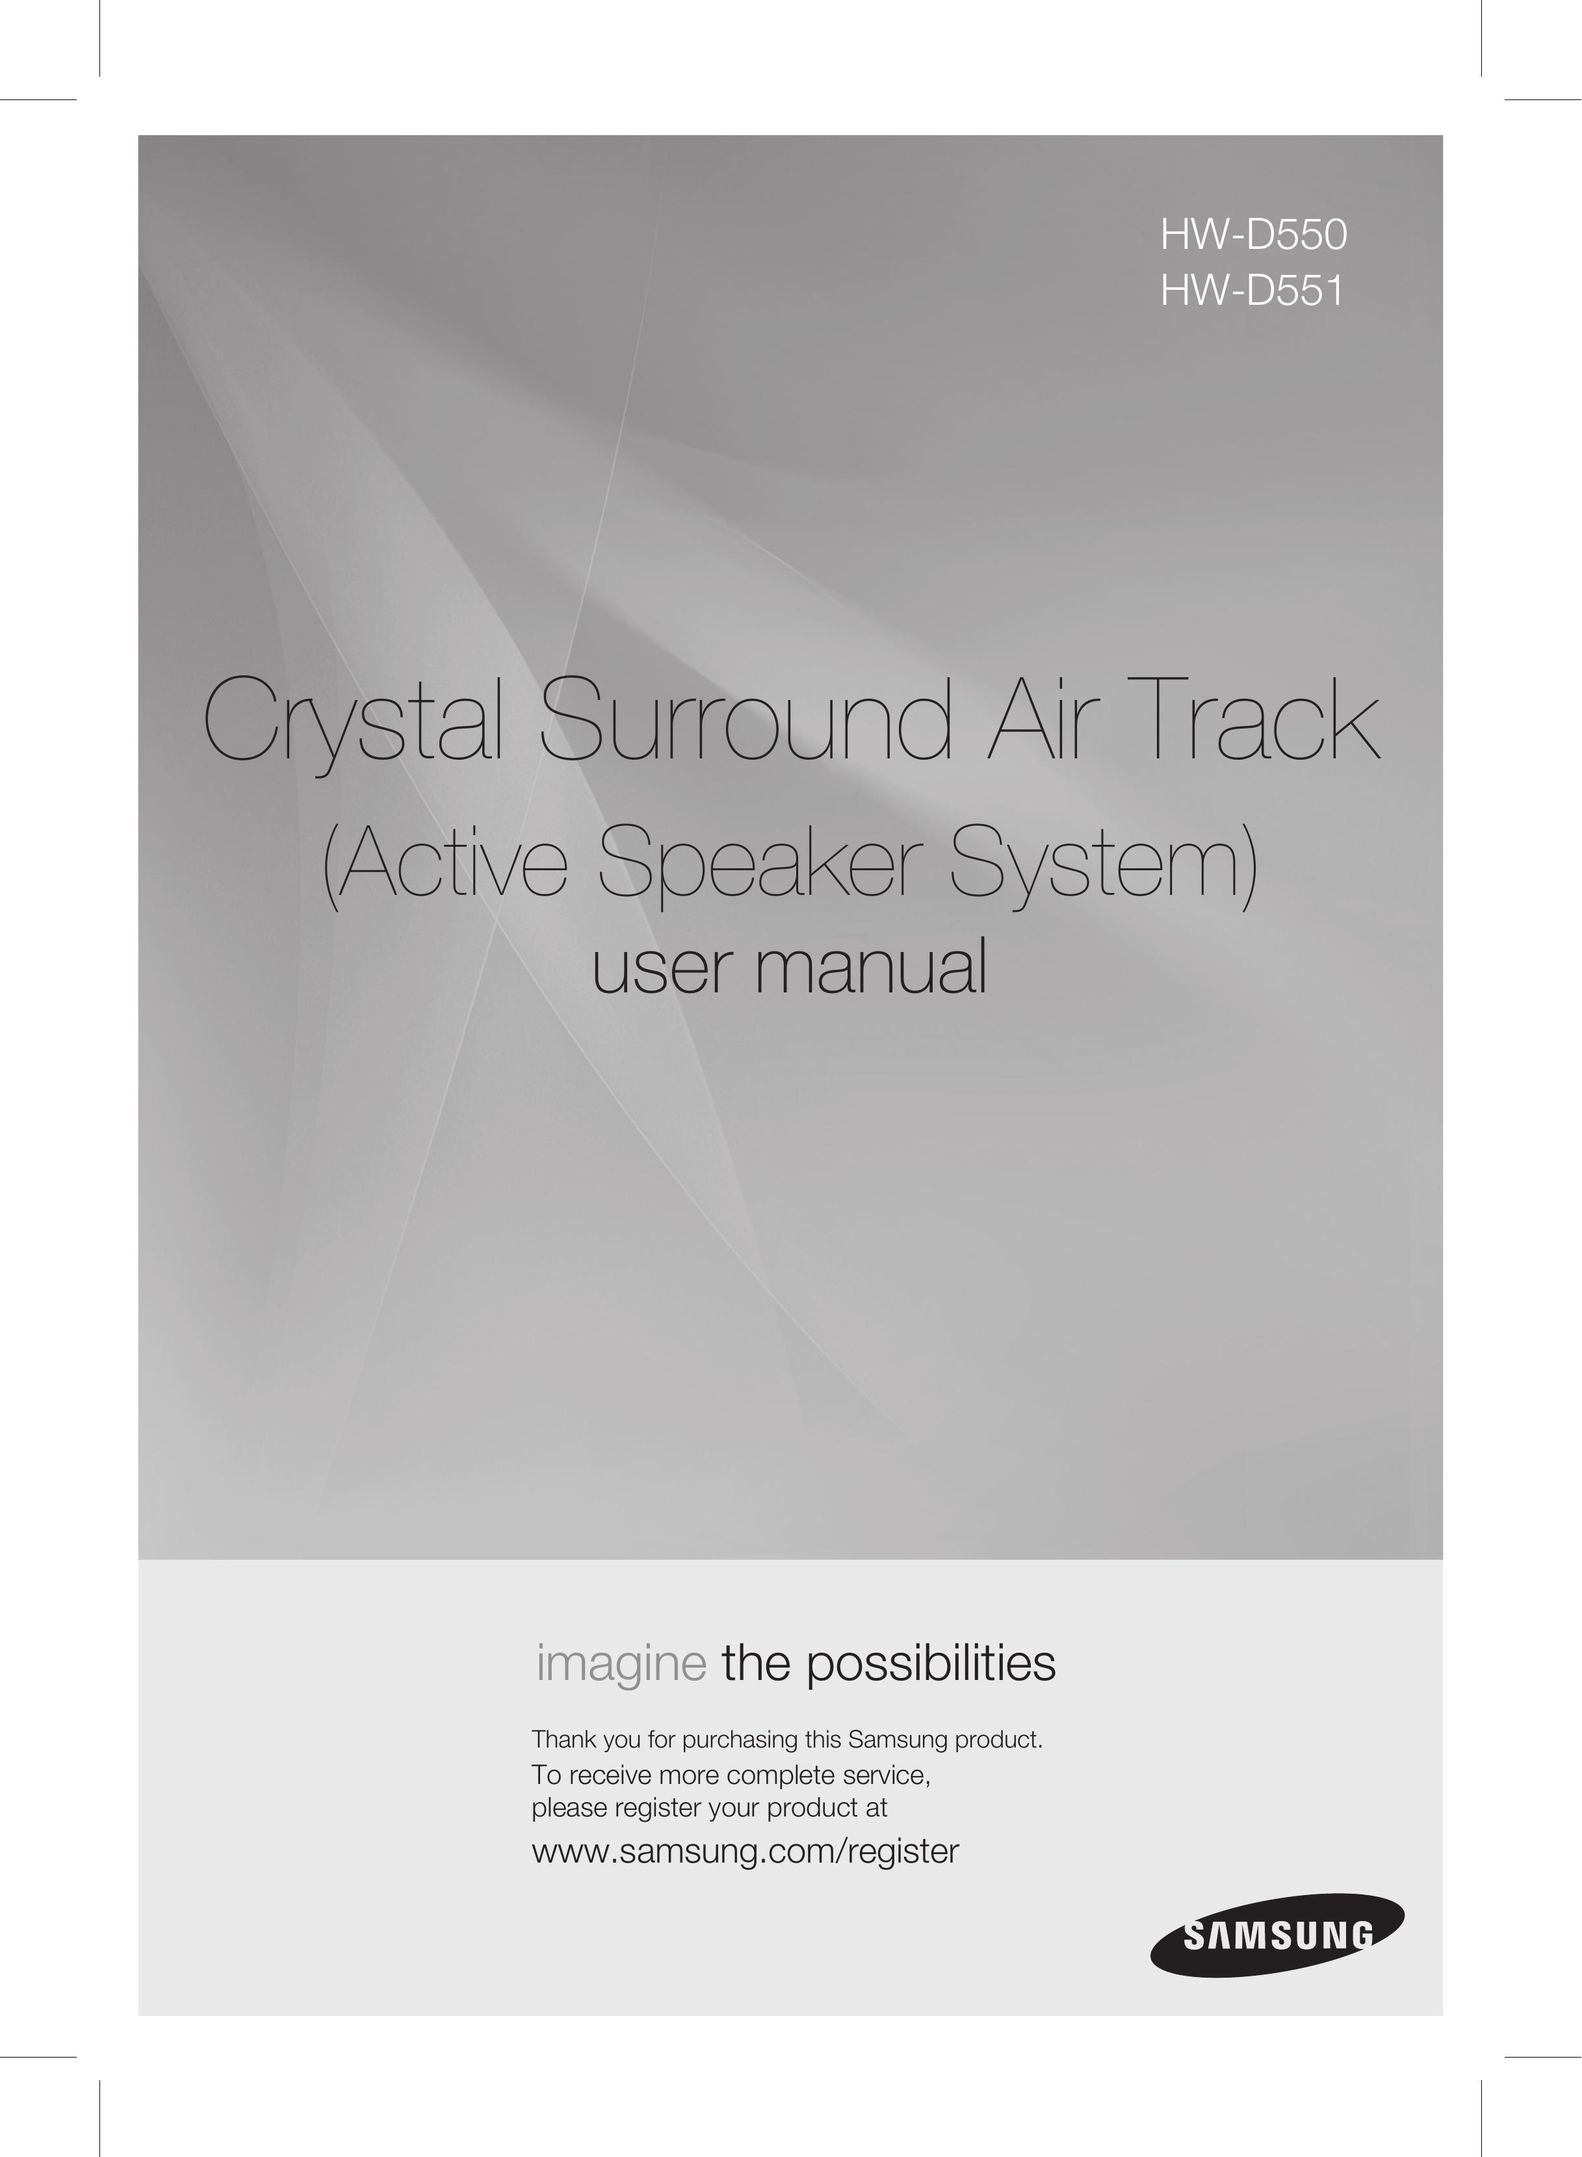 Samsung HW-D550 Speaker User Manual